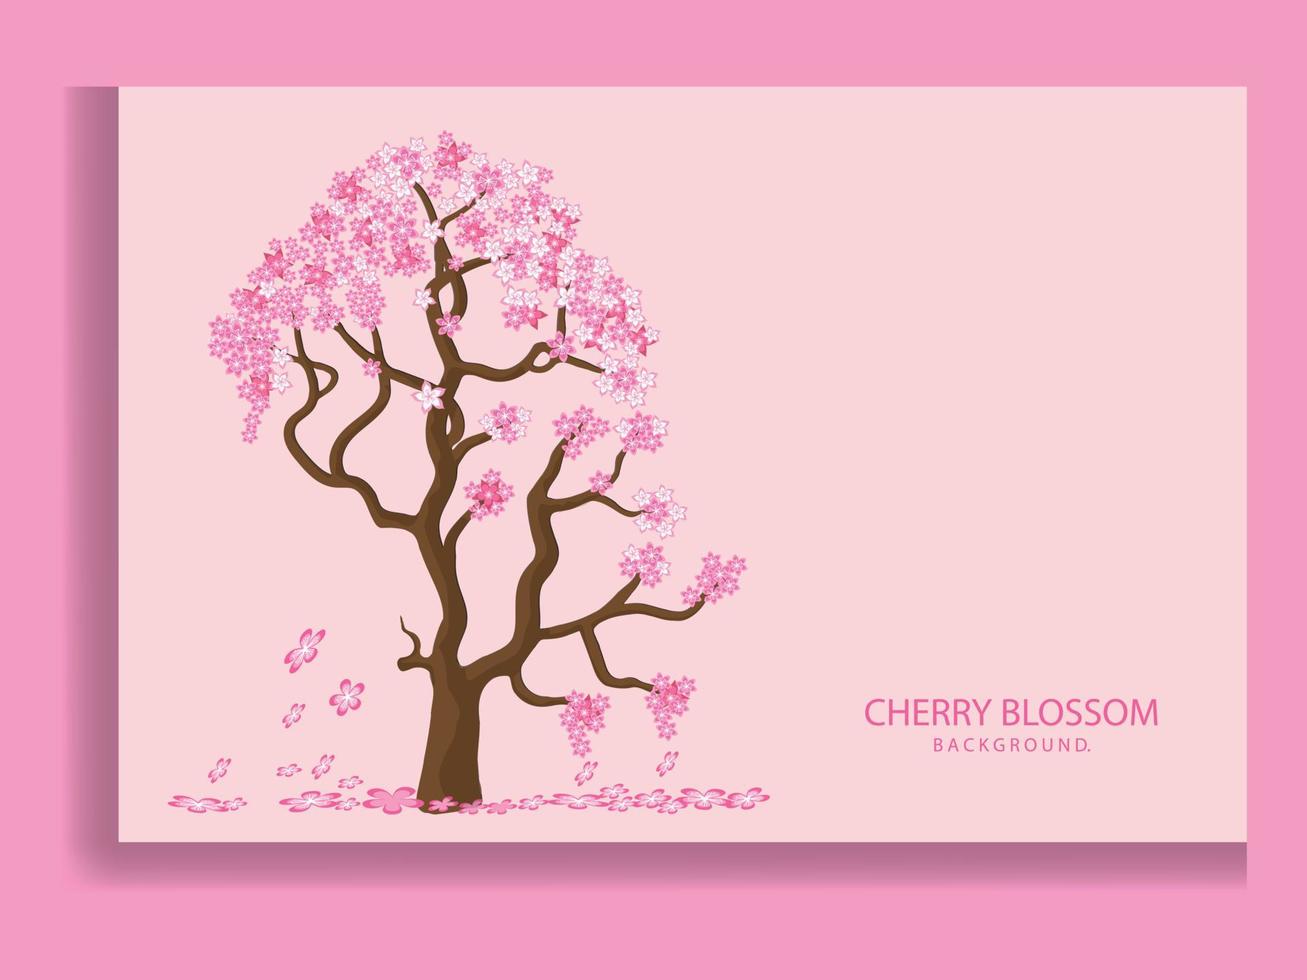 sakura blomma gren. fallande kronblad, blommor. isolerade flygande realistiska japanska rosa körsbär eller aprikos blommiga element faller ner vektor bakgrund. körsbärsblom gren, blomblad illustration